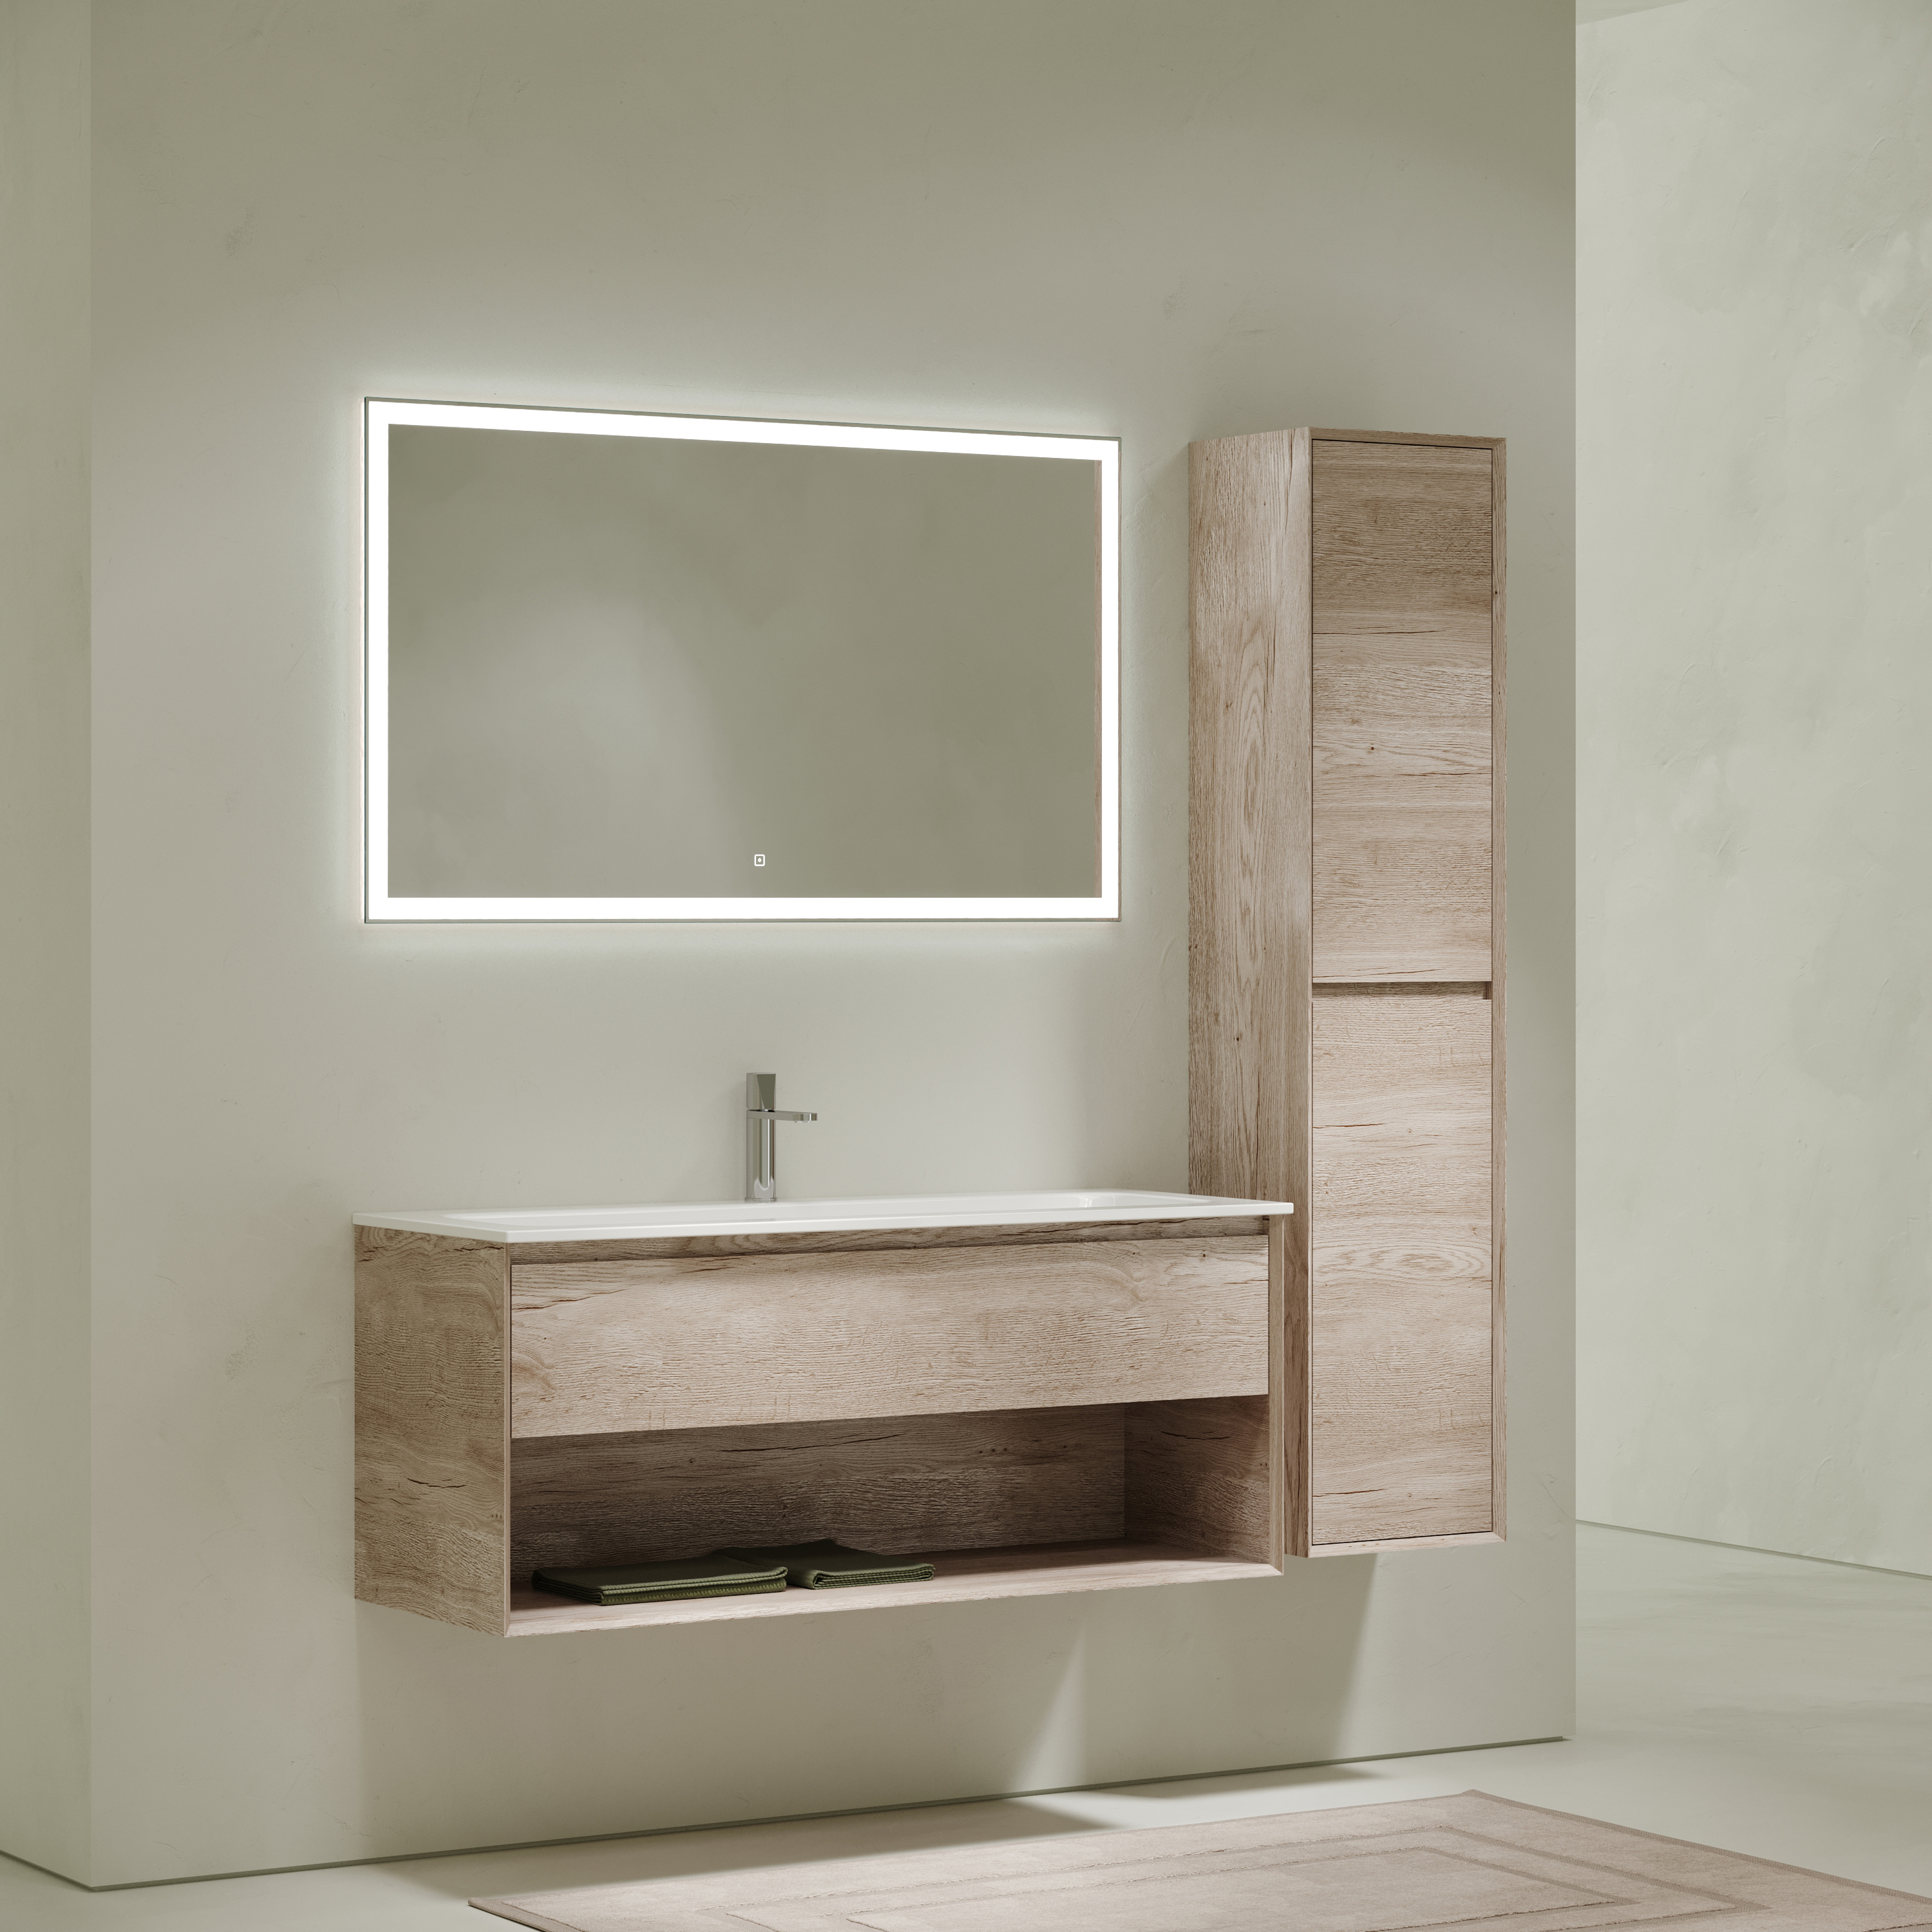 Мебель для ванной комнаты Sancos Marmi 1.0 120 см дуб галифакс натуральный, цвет коричневый MR1.0120EG - фото 2